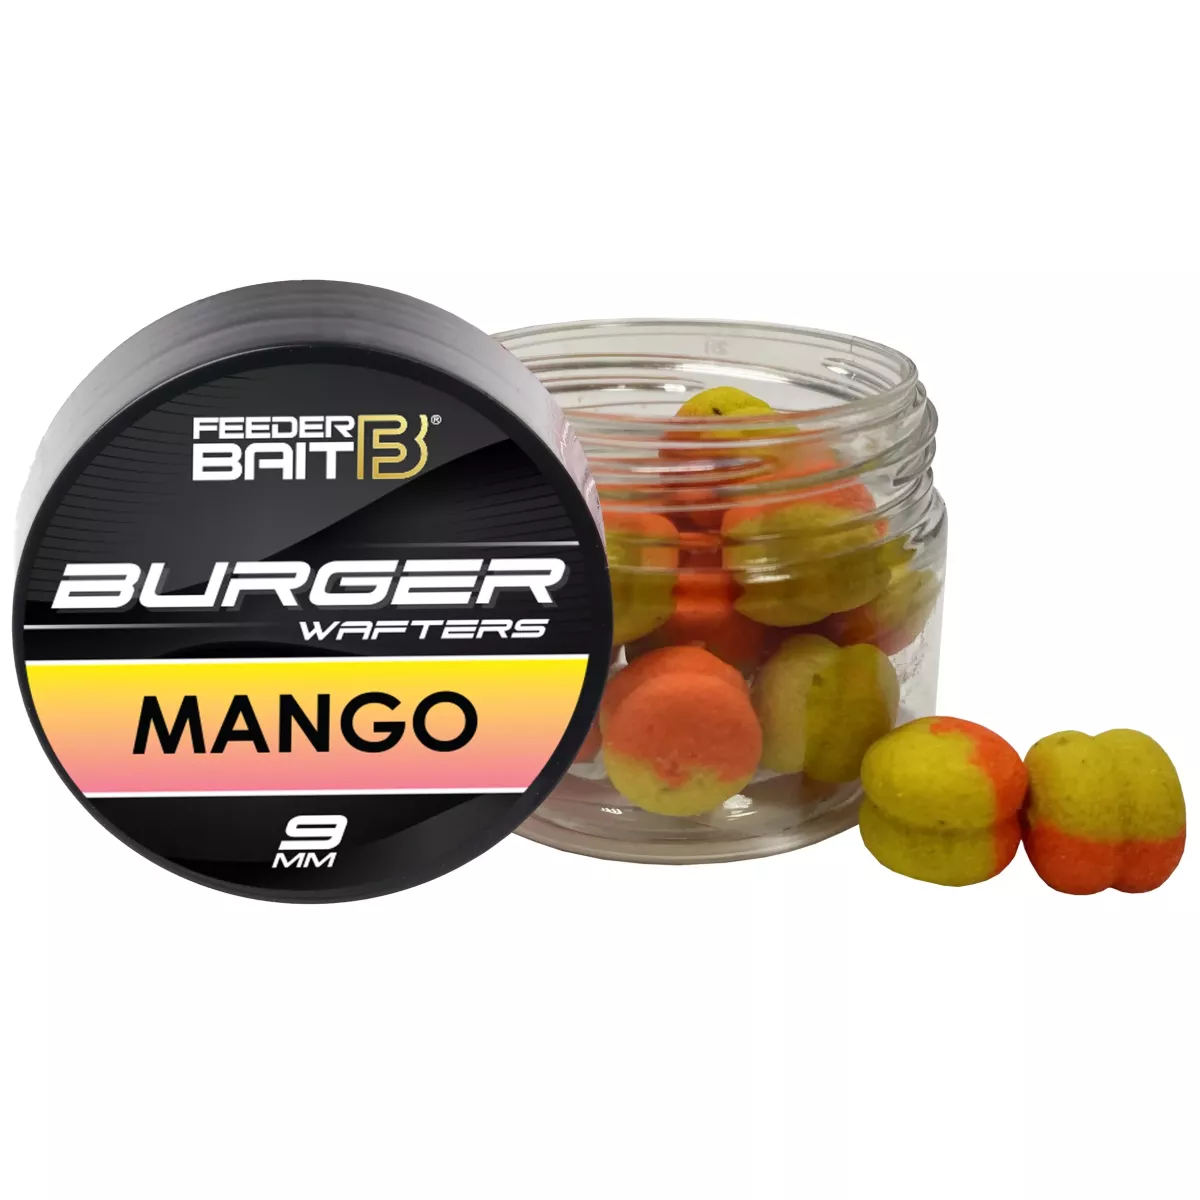 FB37-9 Feeder Bait Burger Wafters 9mm - Mango